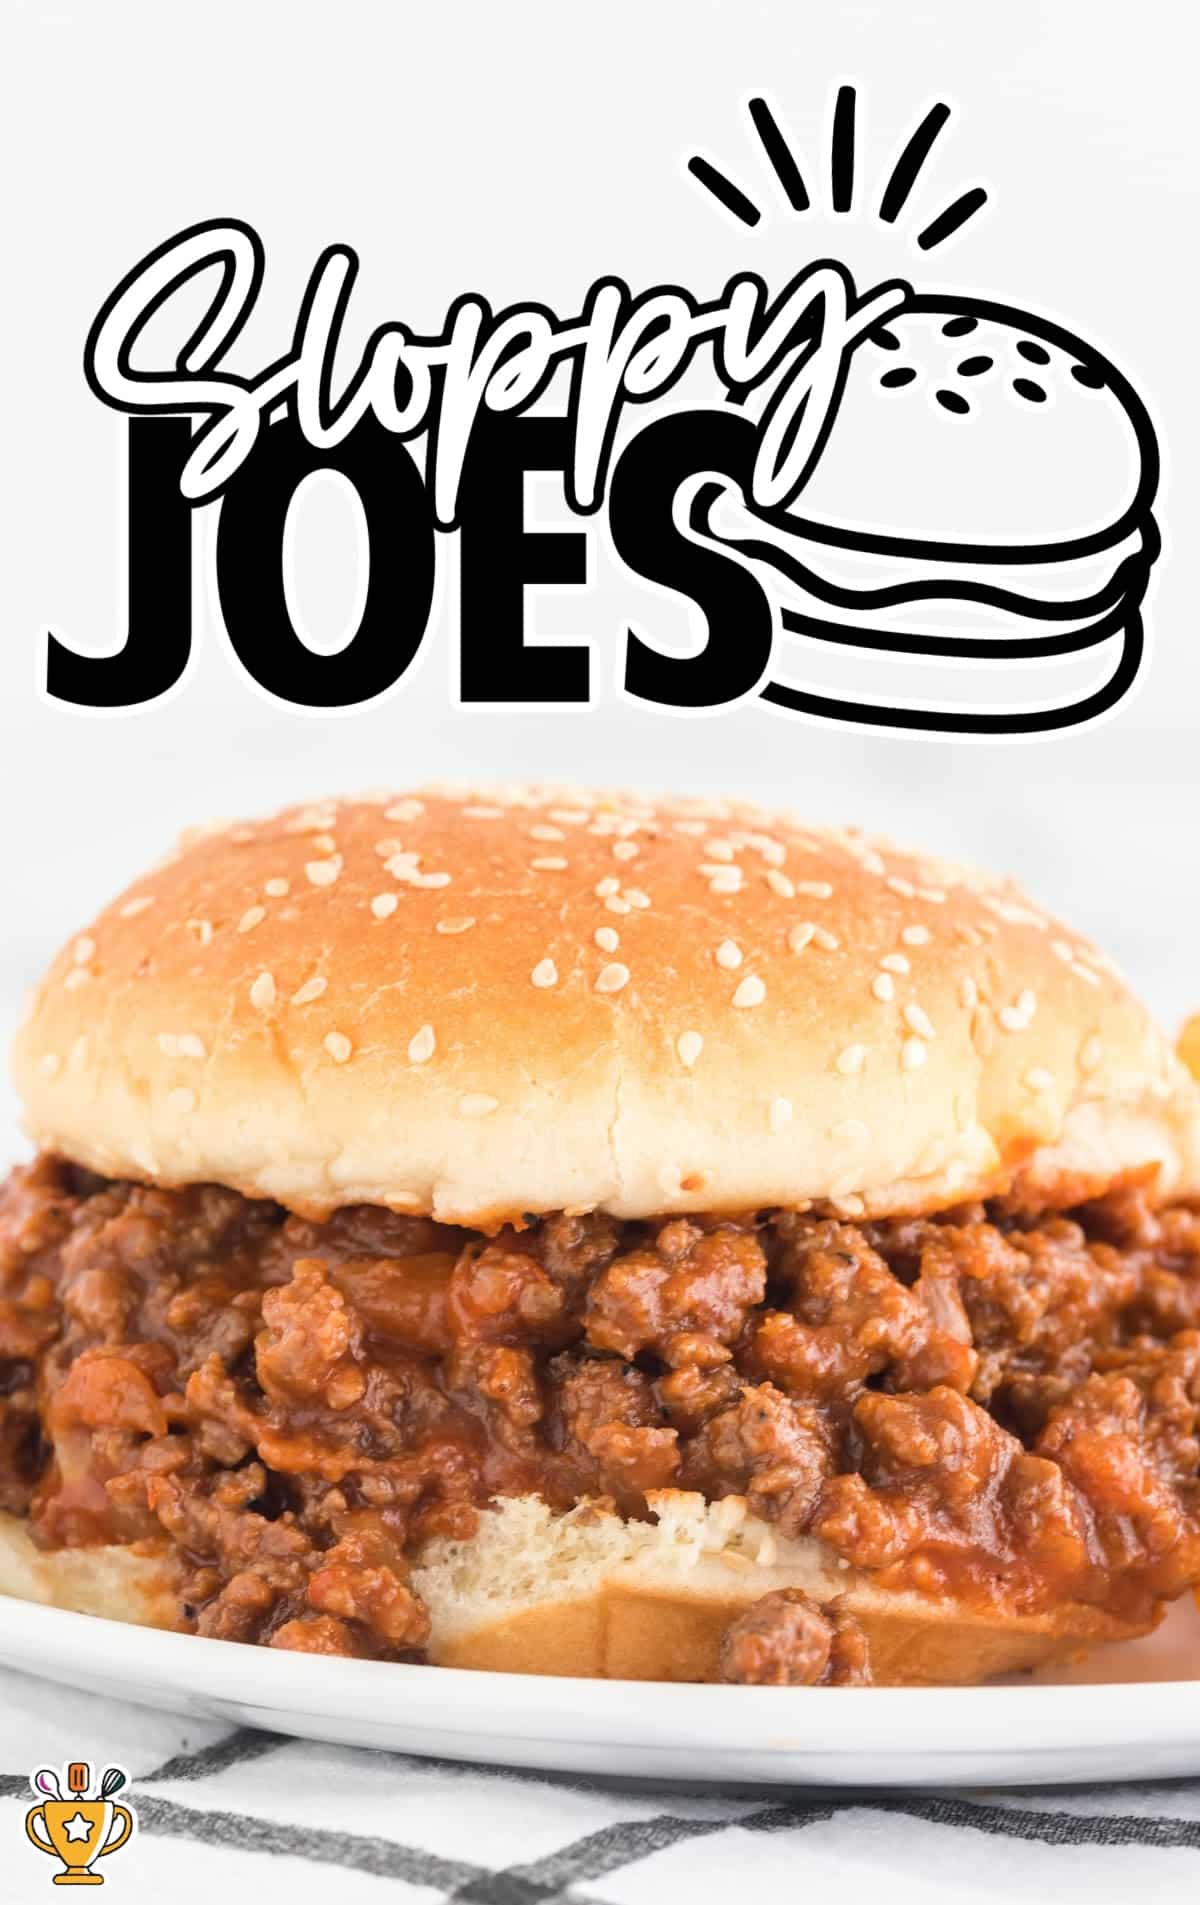 sloppy Joe sandwich on a plate